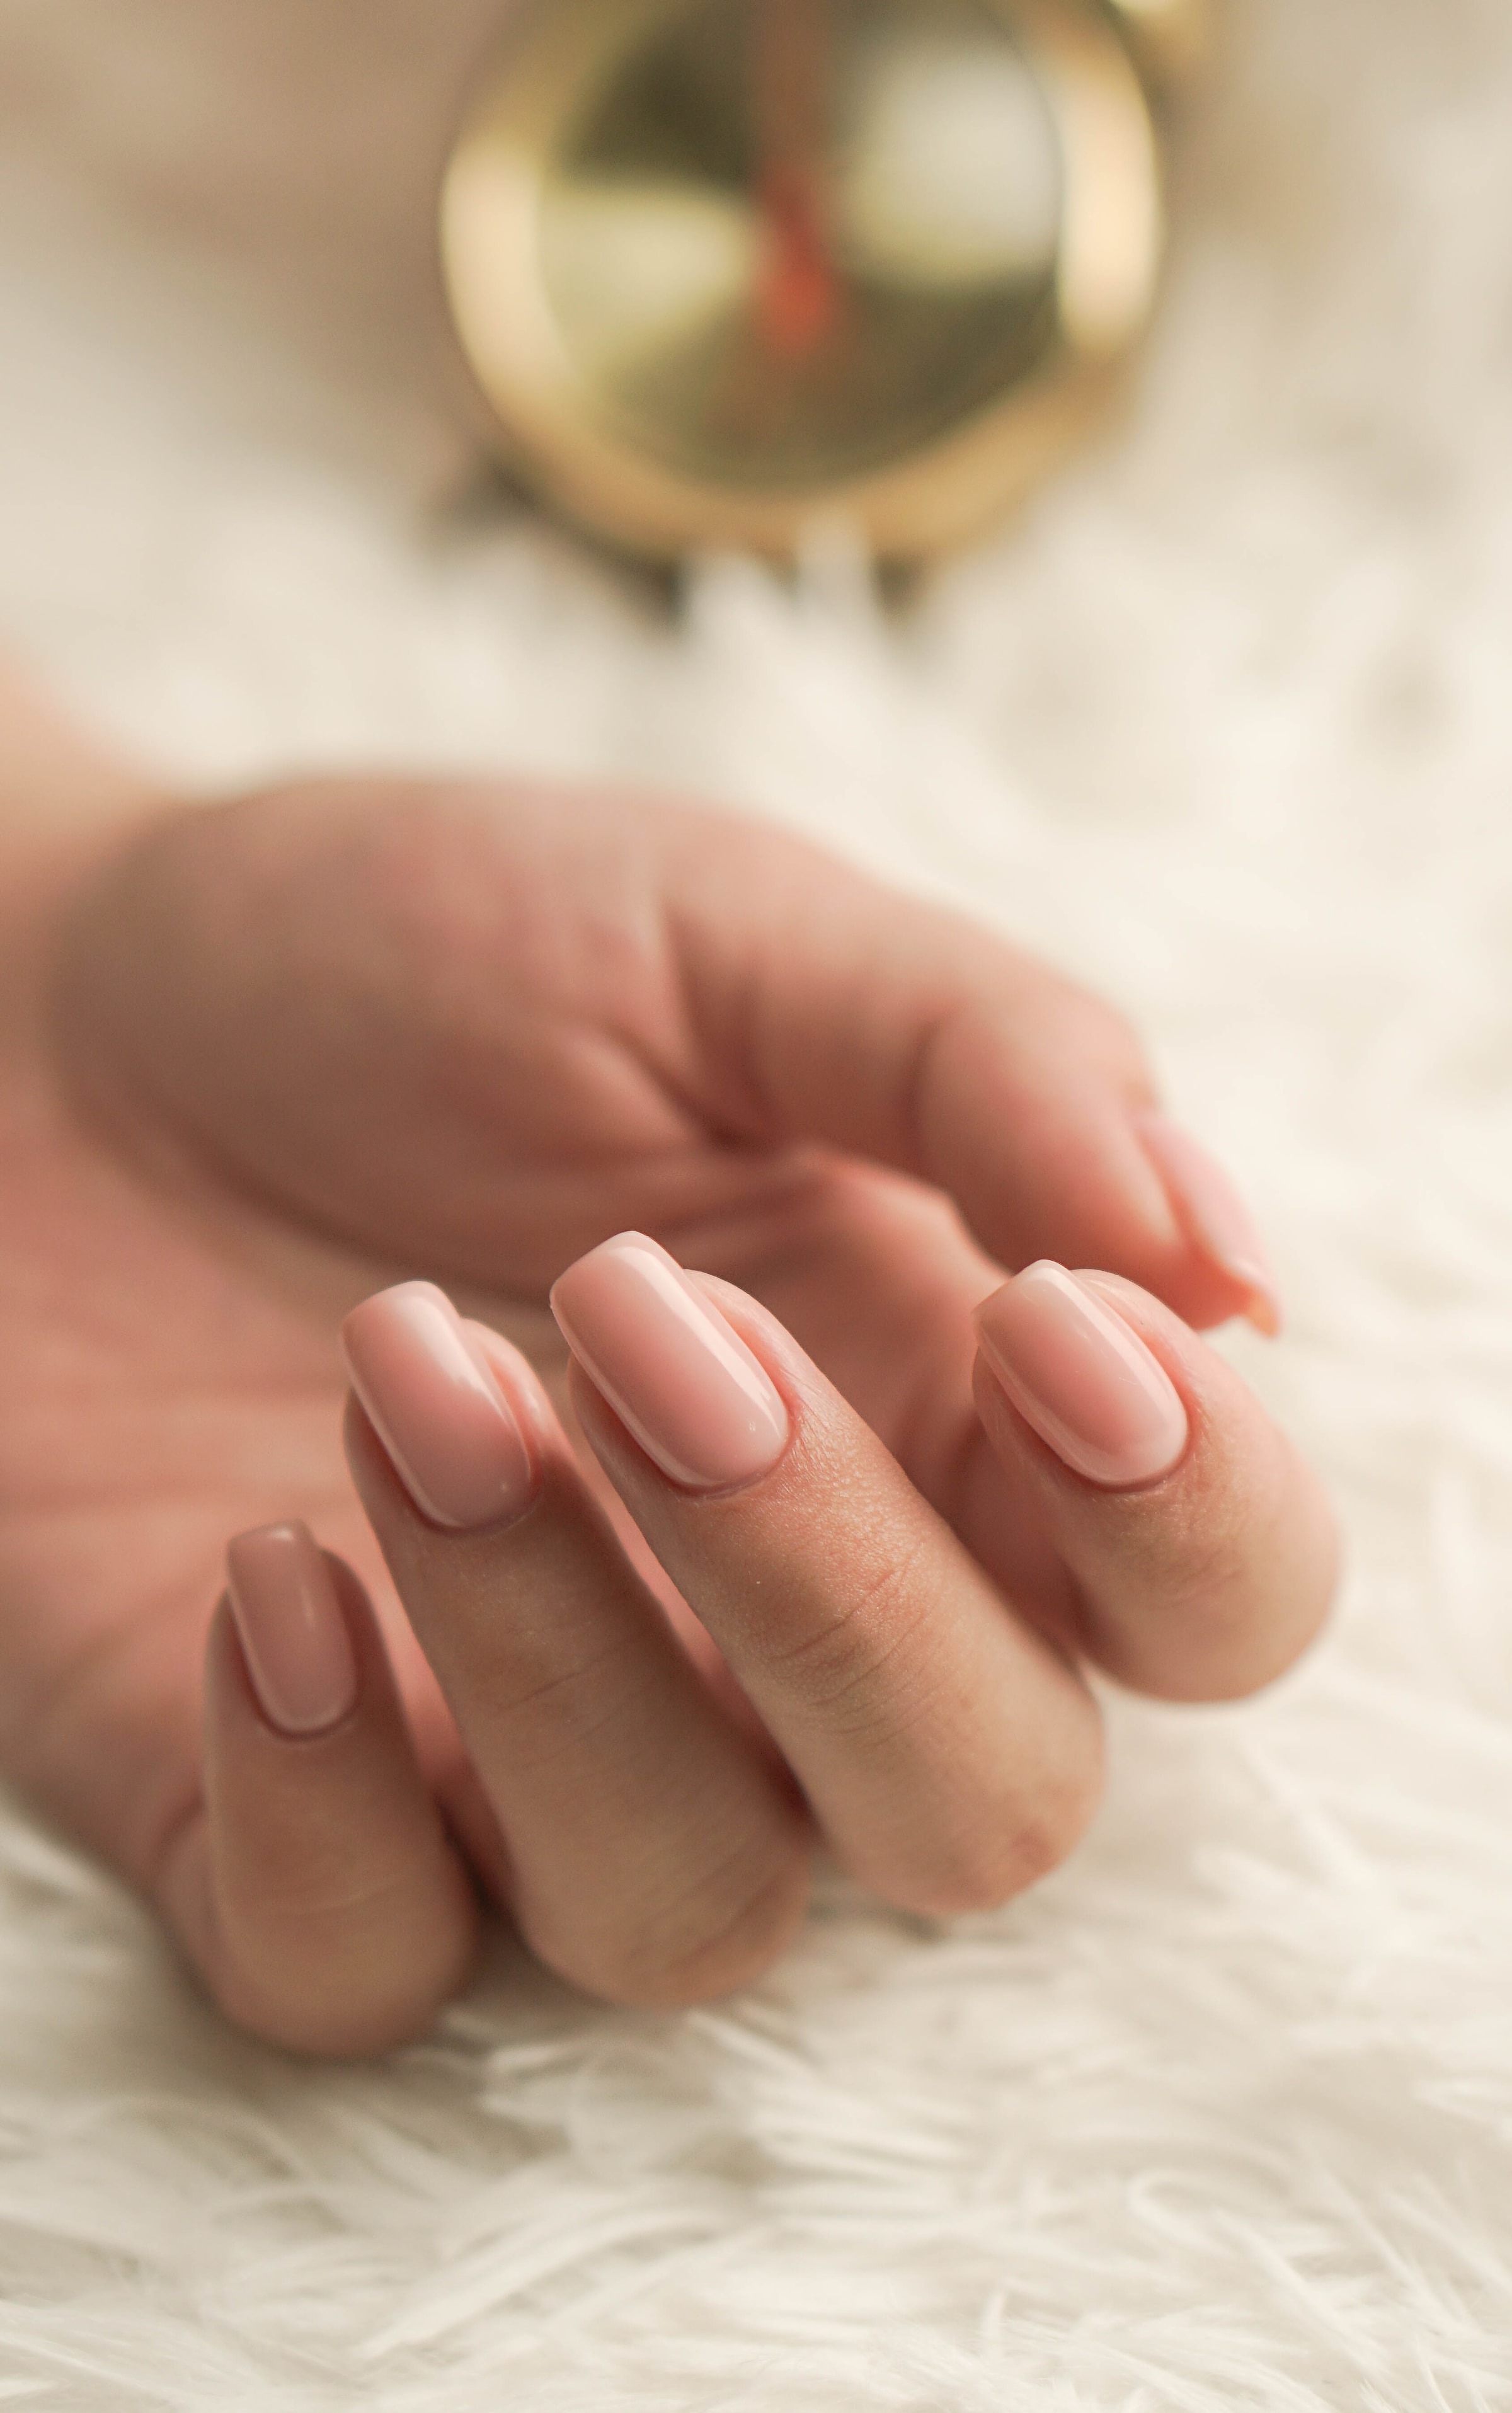 Eine Frau trägt eine nudefarbene Nagelfarbe | Quelle: Pixabay